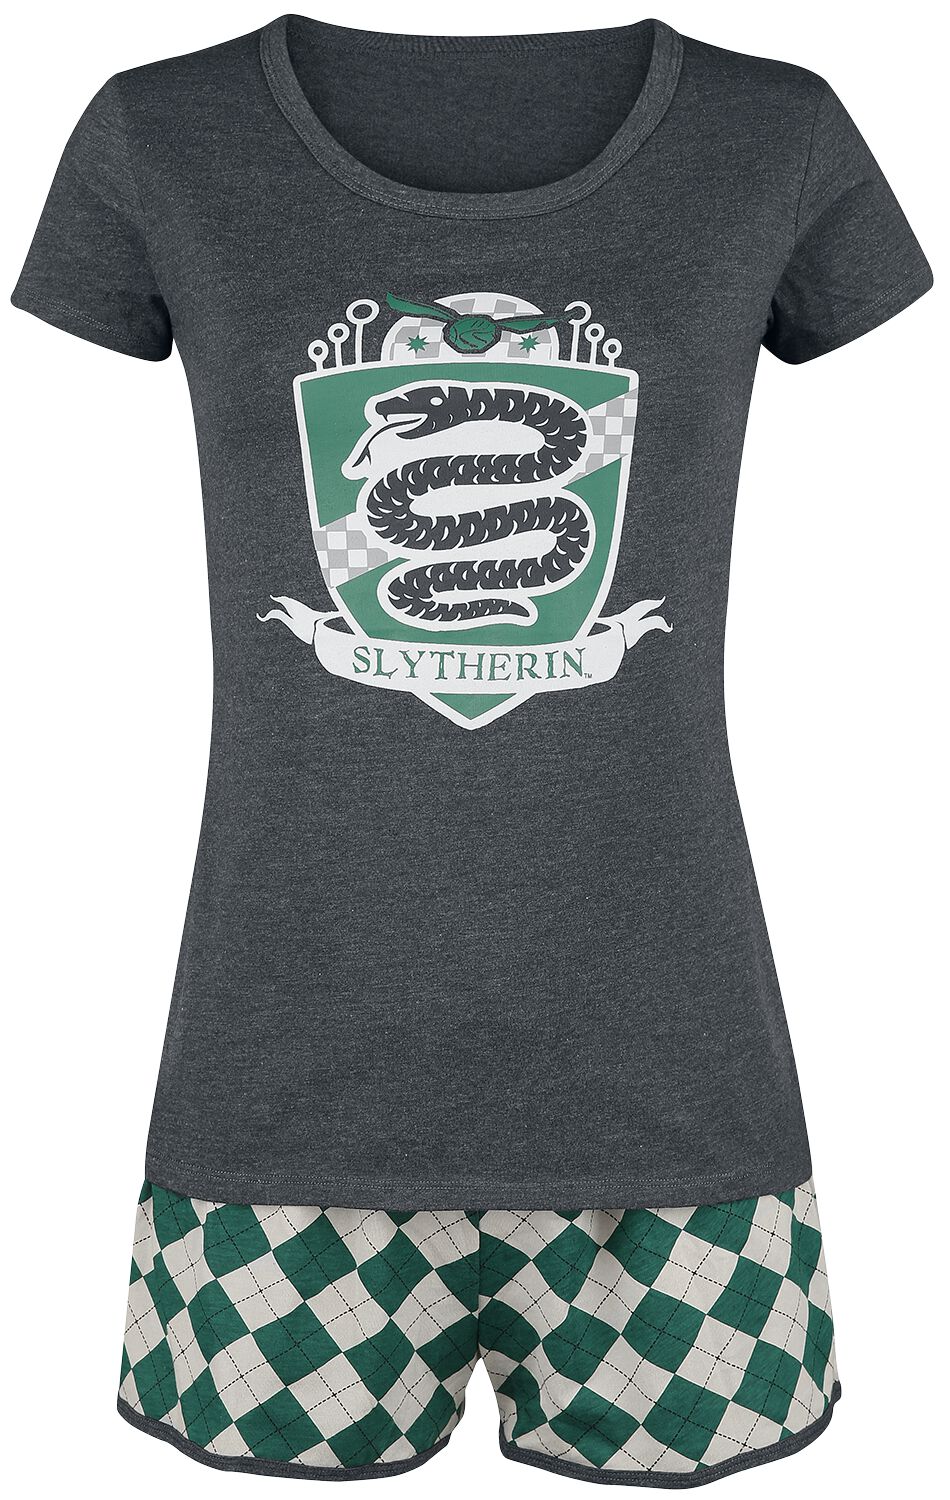 Harry Potter Schlafanzug - Slytherin Quidditch - XS bis 3XL - für Damen - Größe S - grün/grau  - EMP exklusives Merchandise!